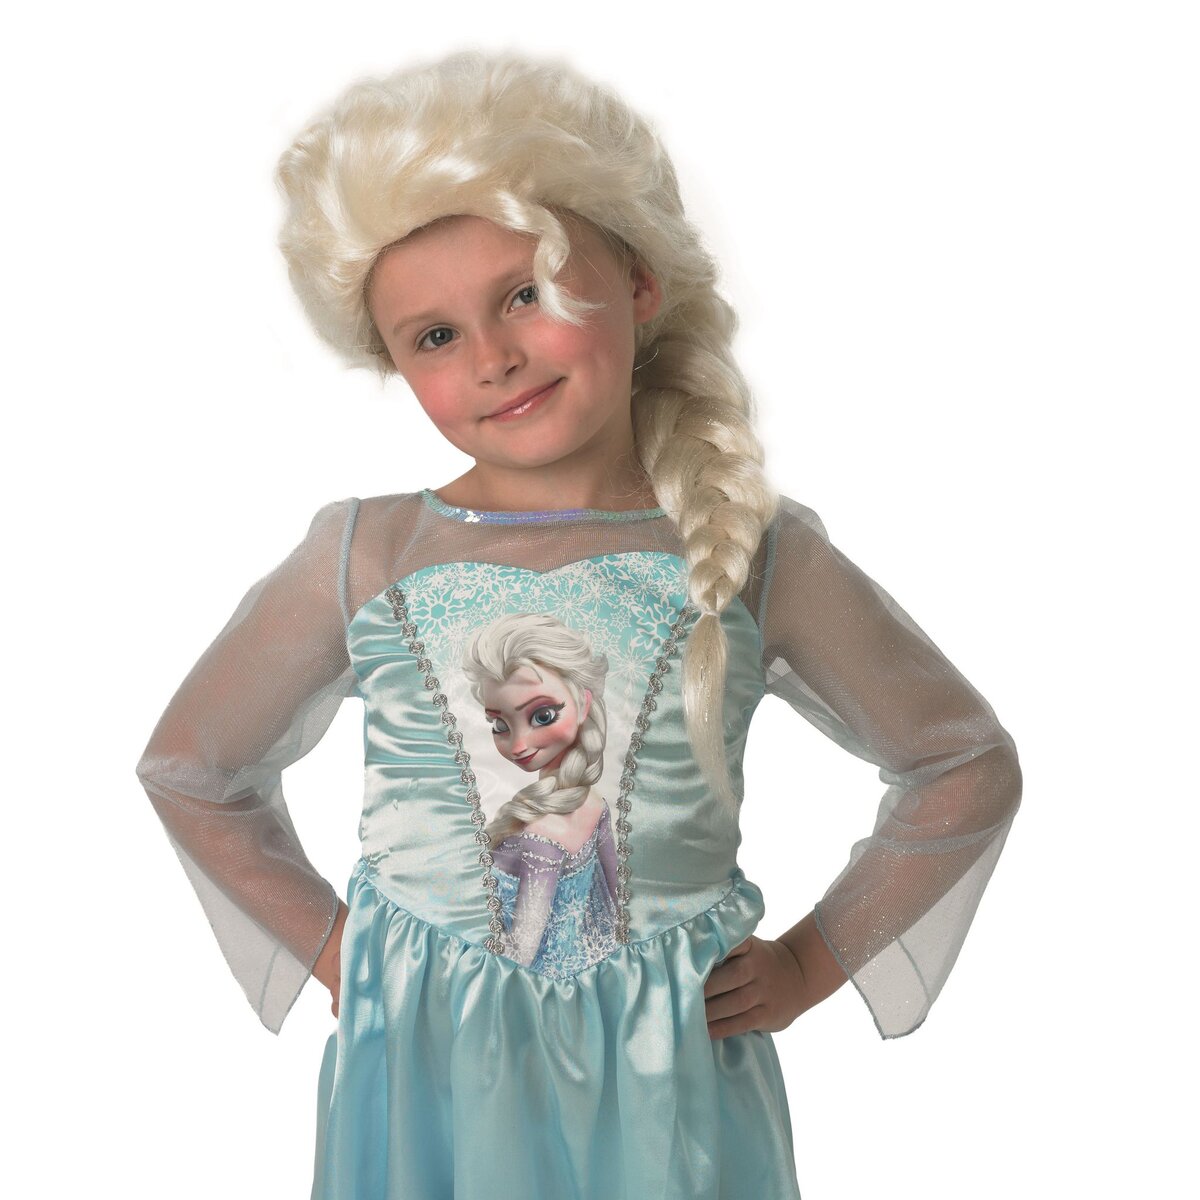 RUBIES Déguisement classique Elsa taille 3/4 ans - La reine des